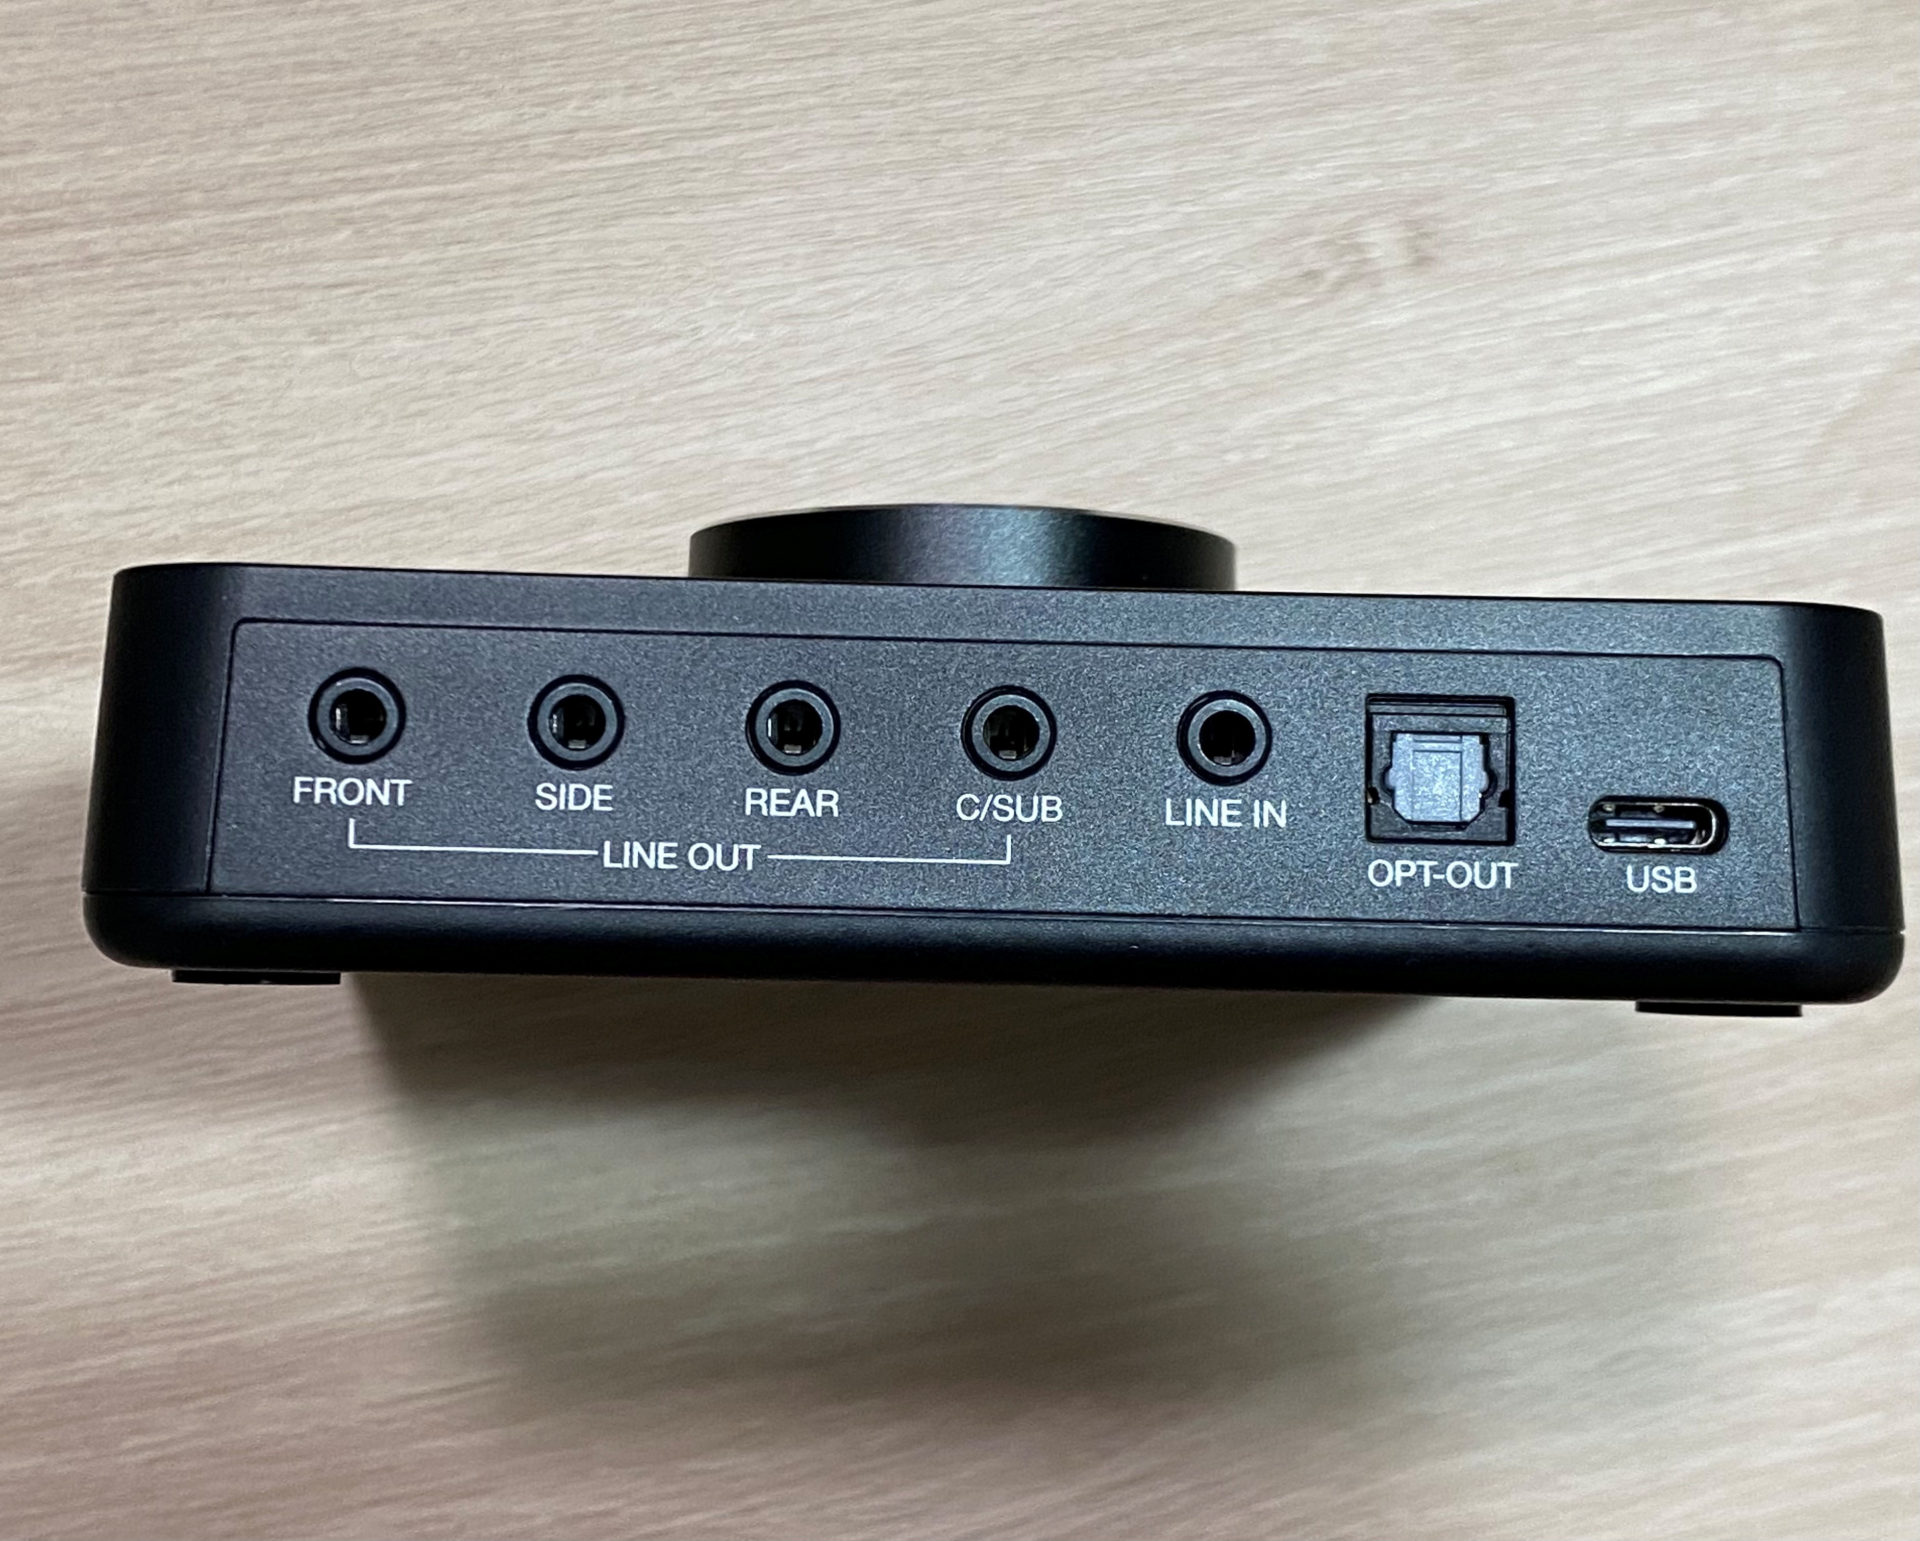 【ゲーム/映画に】多機能USB-DAC SoundBlaster X3レビュー【仕事にも】 - デジチン工房！